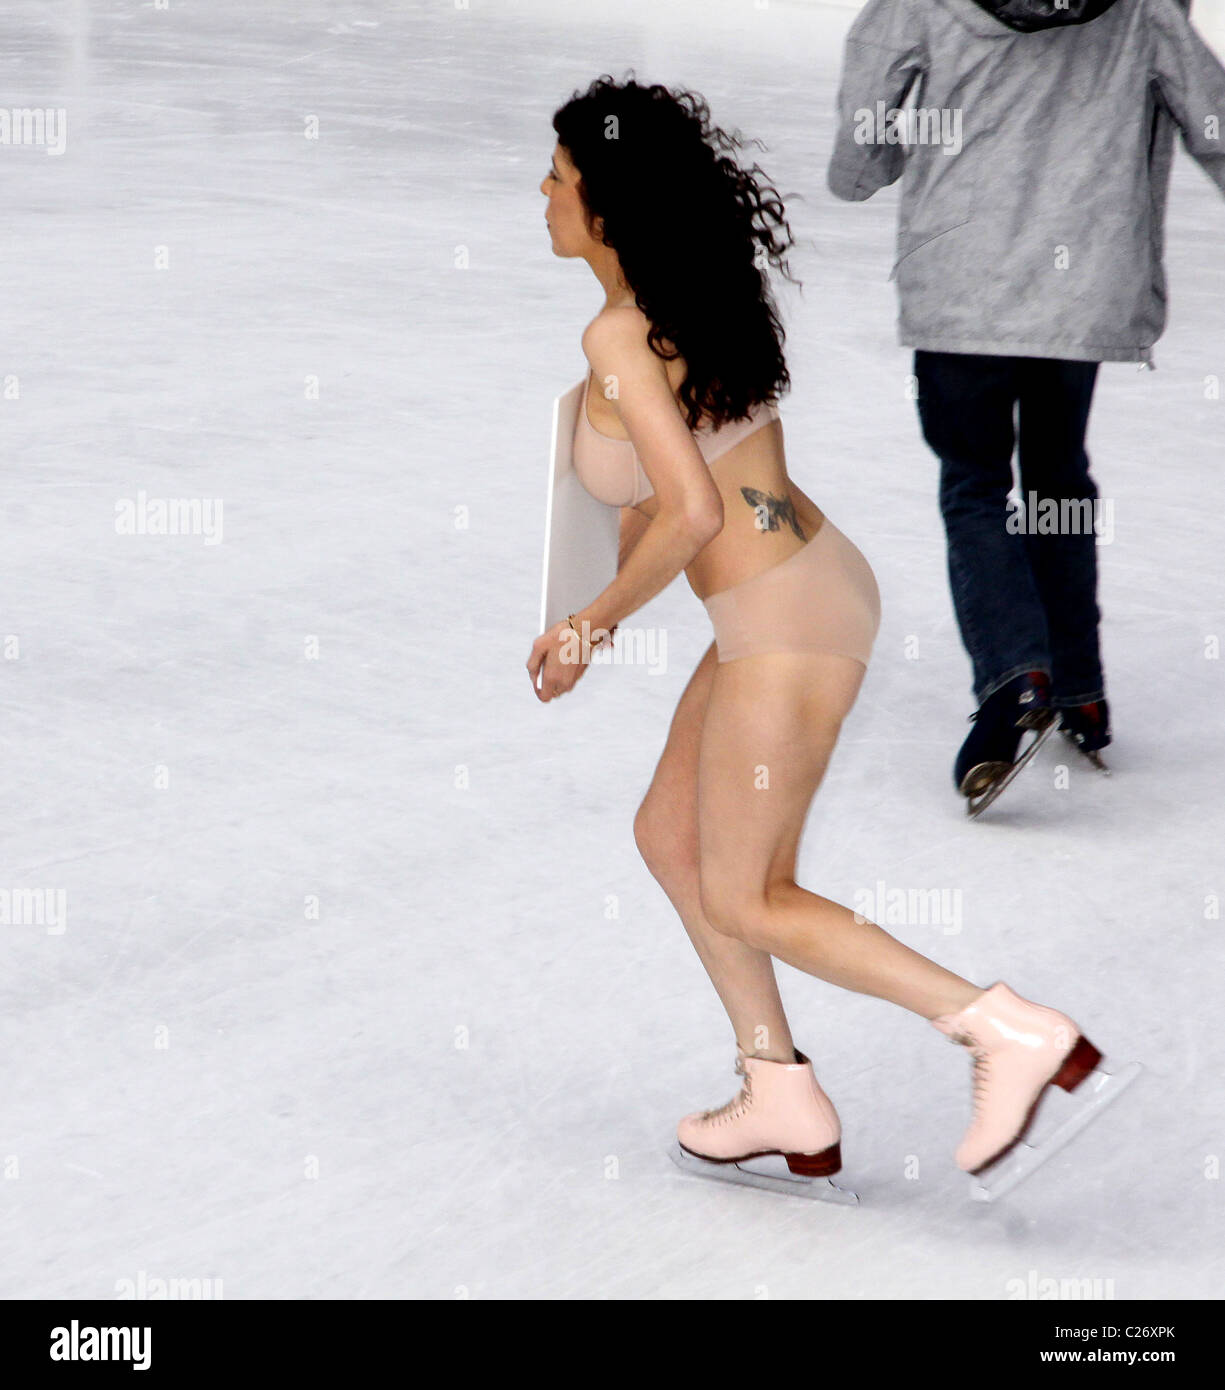 Naked figure skater